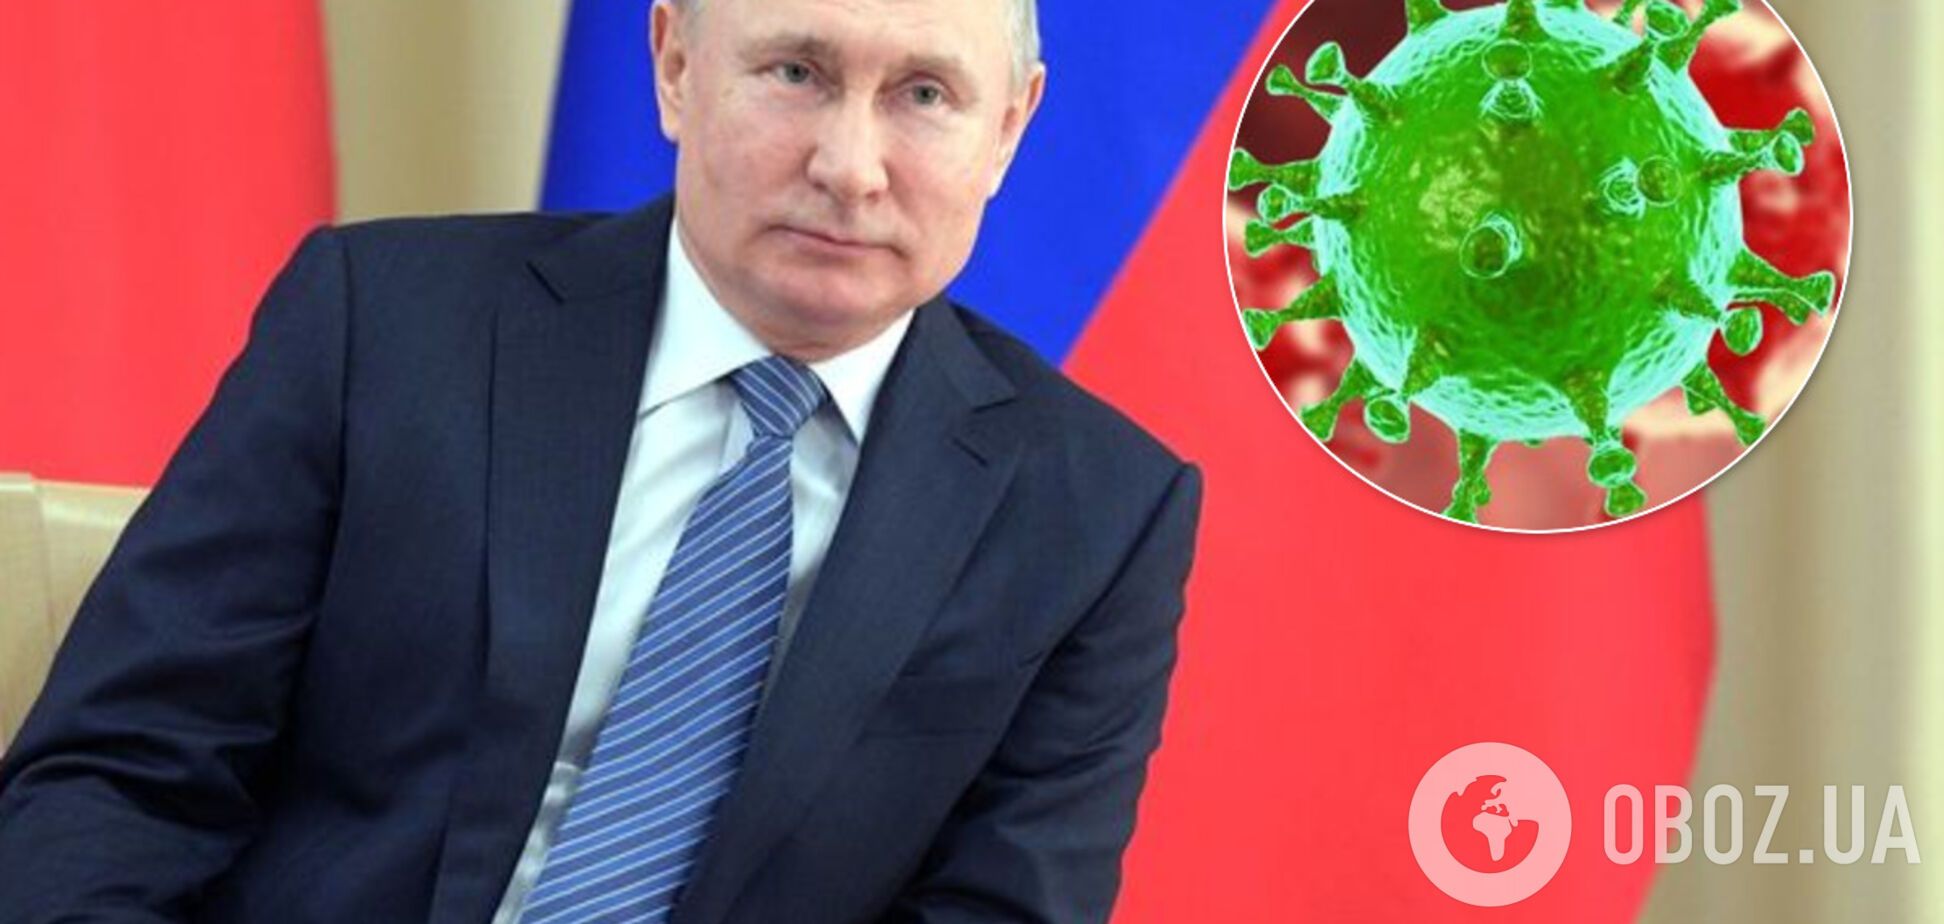 Русское чудо: Путин лично договорился с коронавирусом